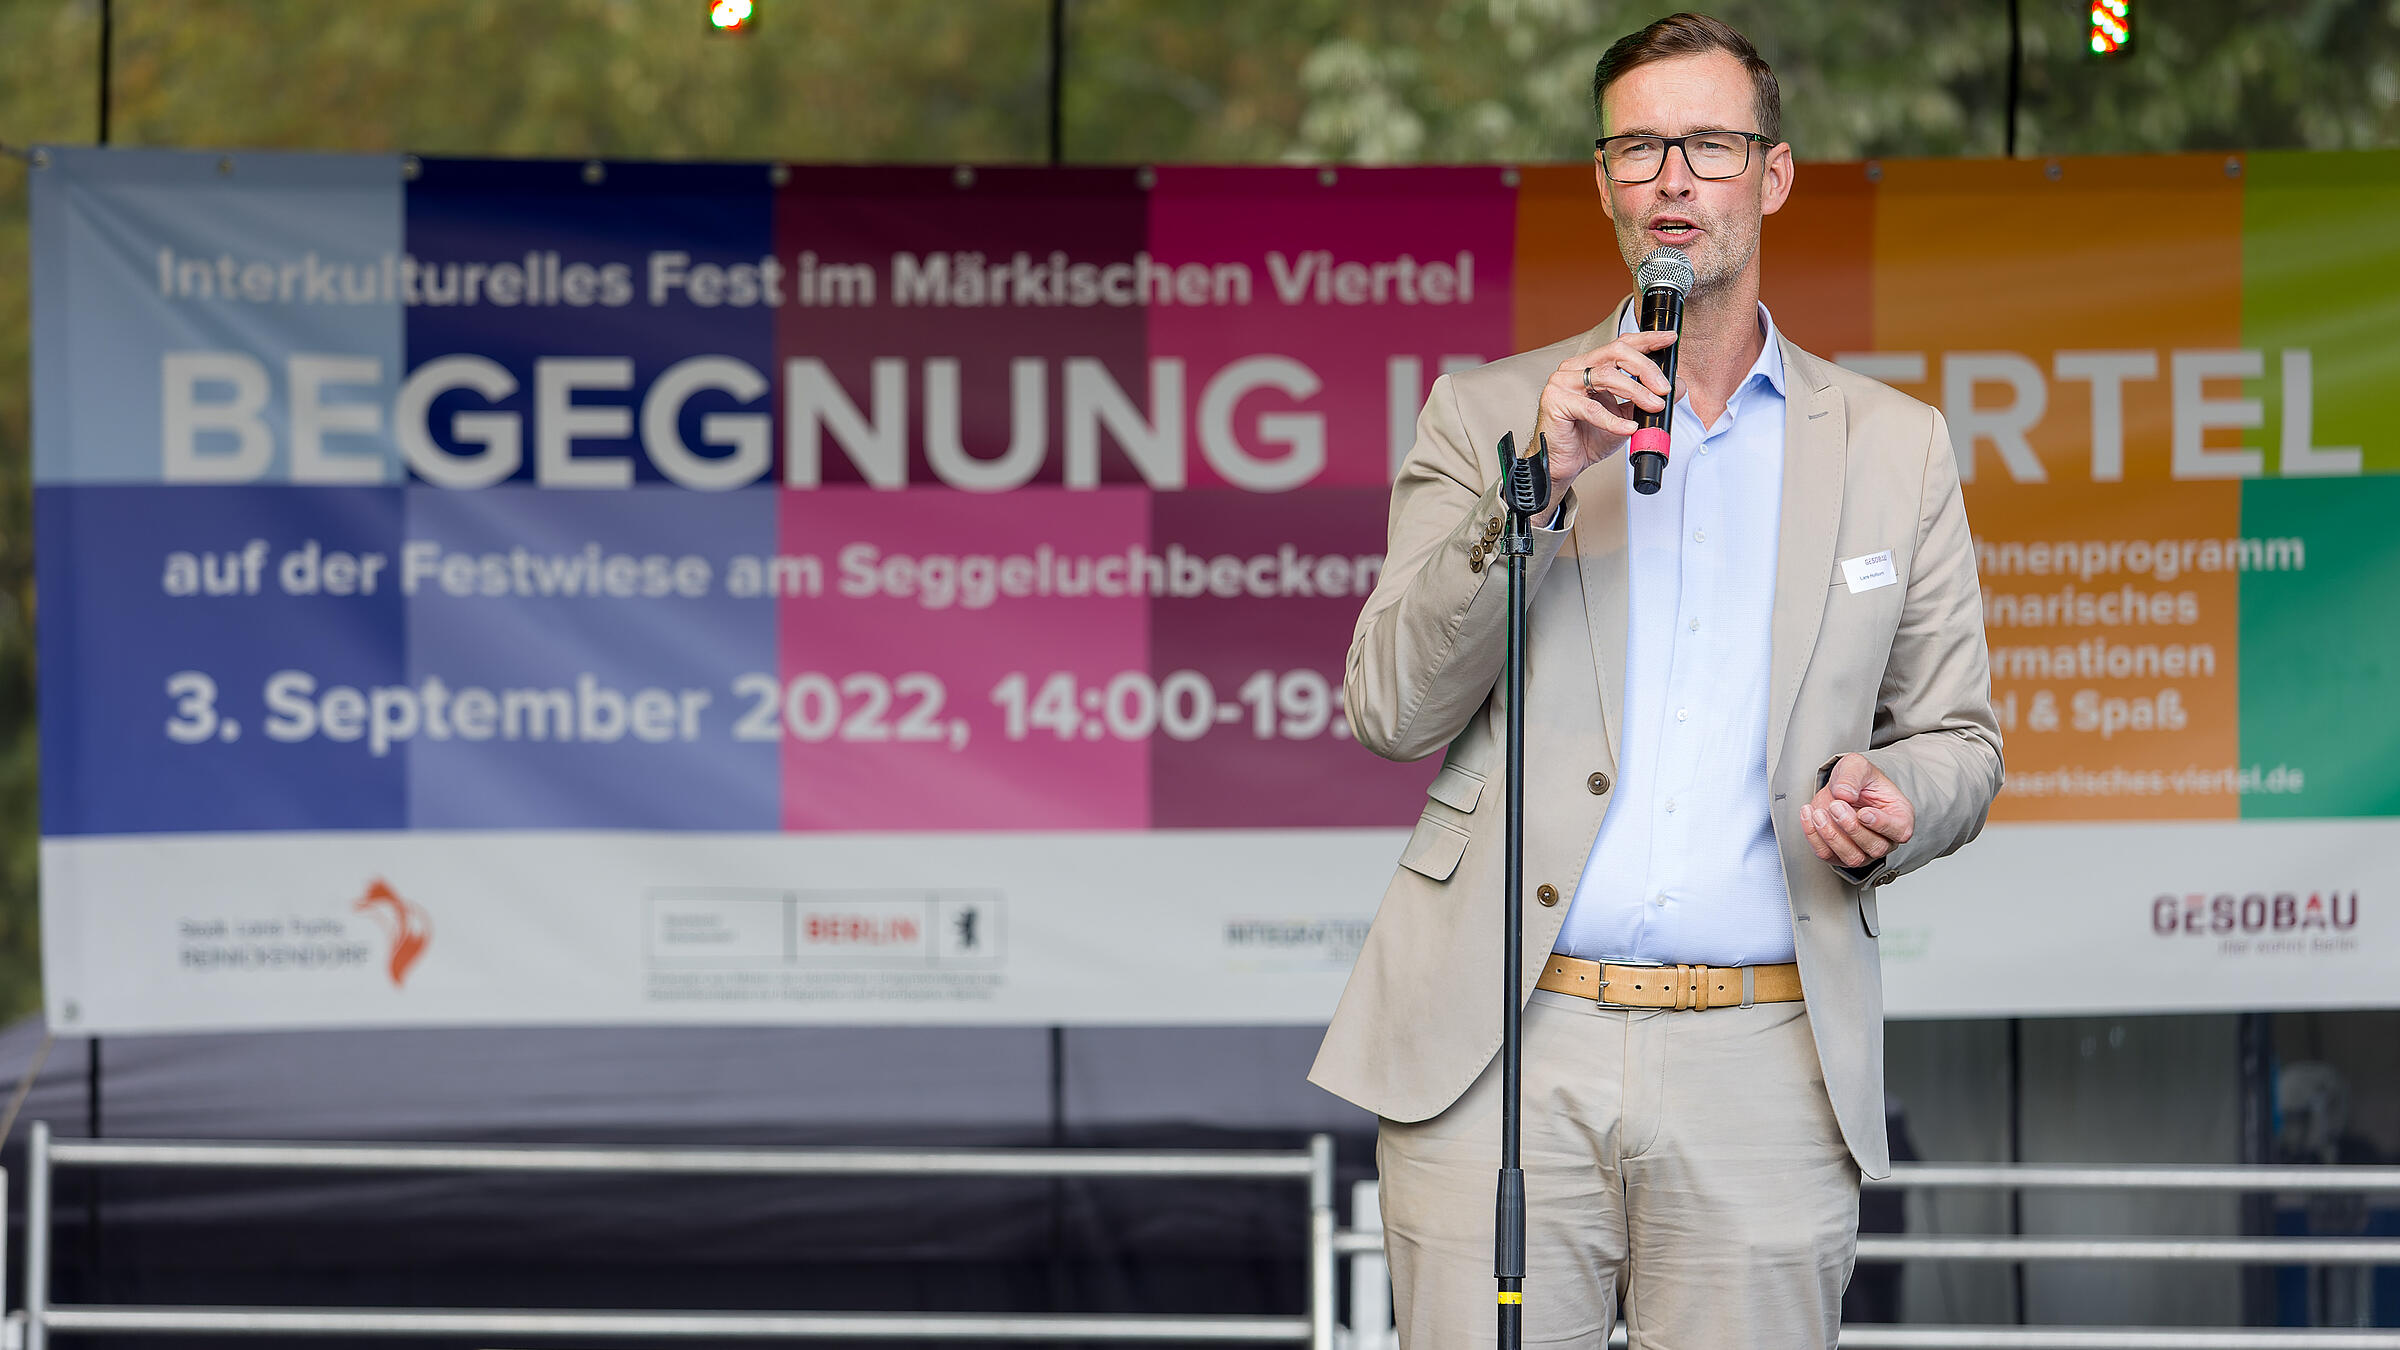 Außenaufnahme zeigt Lars Holborn auf der Bühne bei der offiziellen Eröffnung des Begegnungsfests 2022.